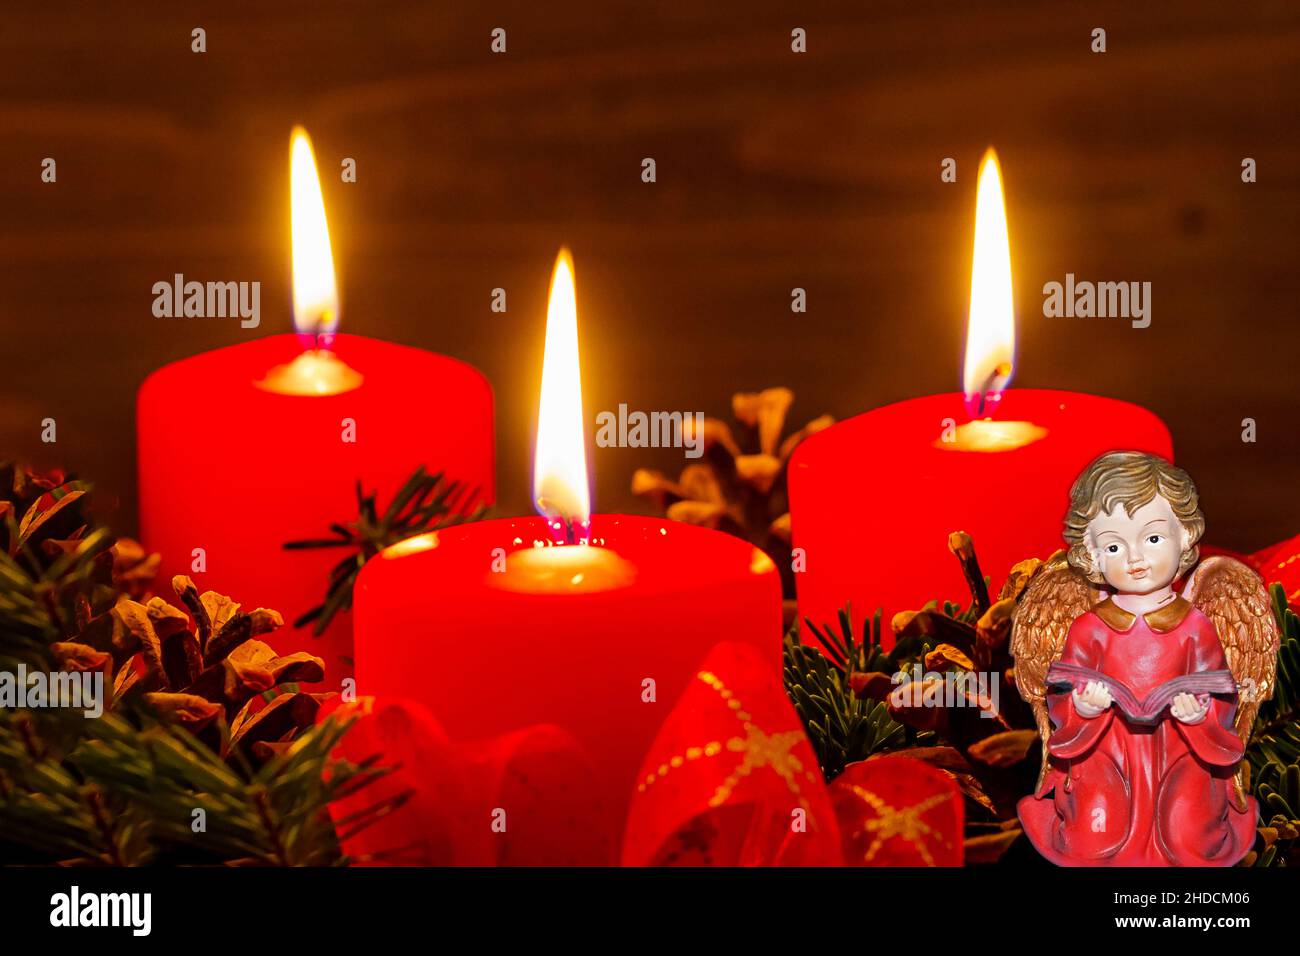 Ein Adventskranz zu Weihnachten sorgt für romatinsche Stimmung in der stillen Advent Zeit. 3 brennende Kerzen, 3. Advent, Stock Photo